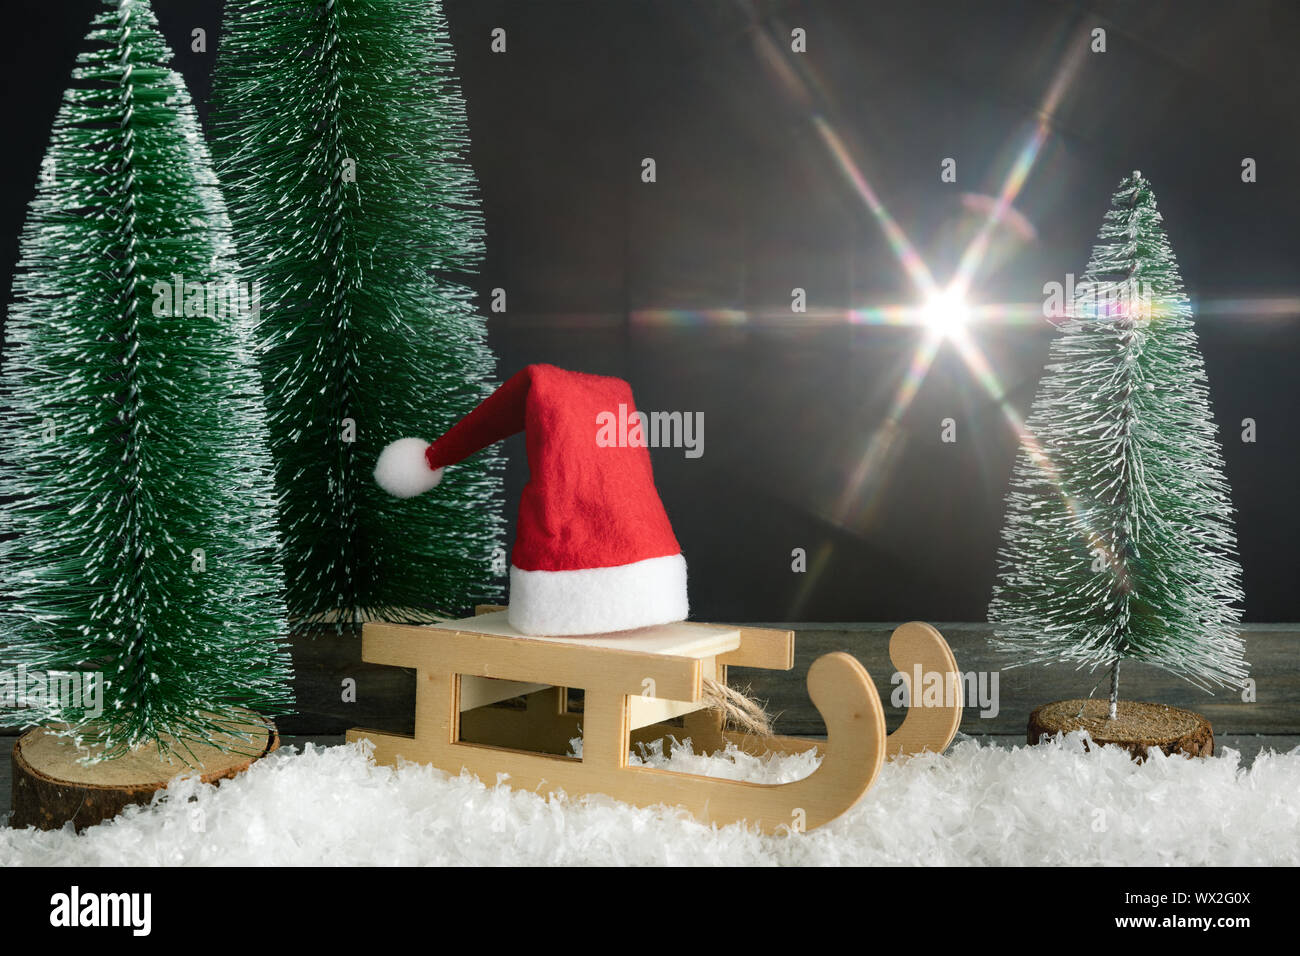 Weihnachtsdekoration mit einem roten Santa Claus hat auf einem Schlitten neben Tannen und leichte flare Stockfoto